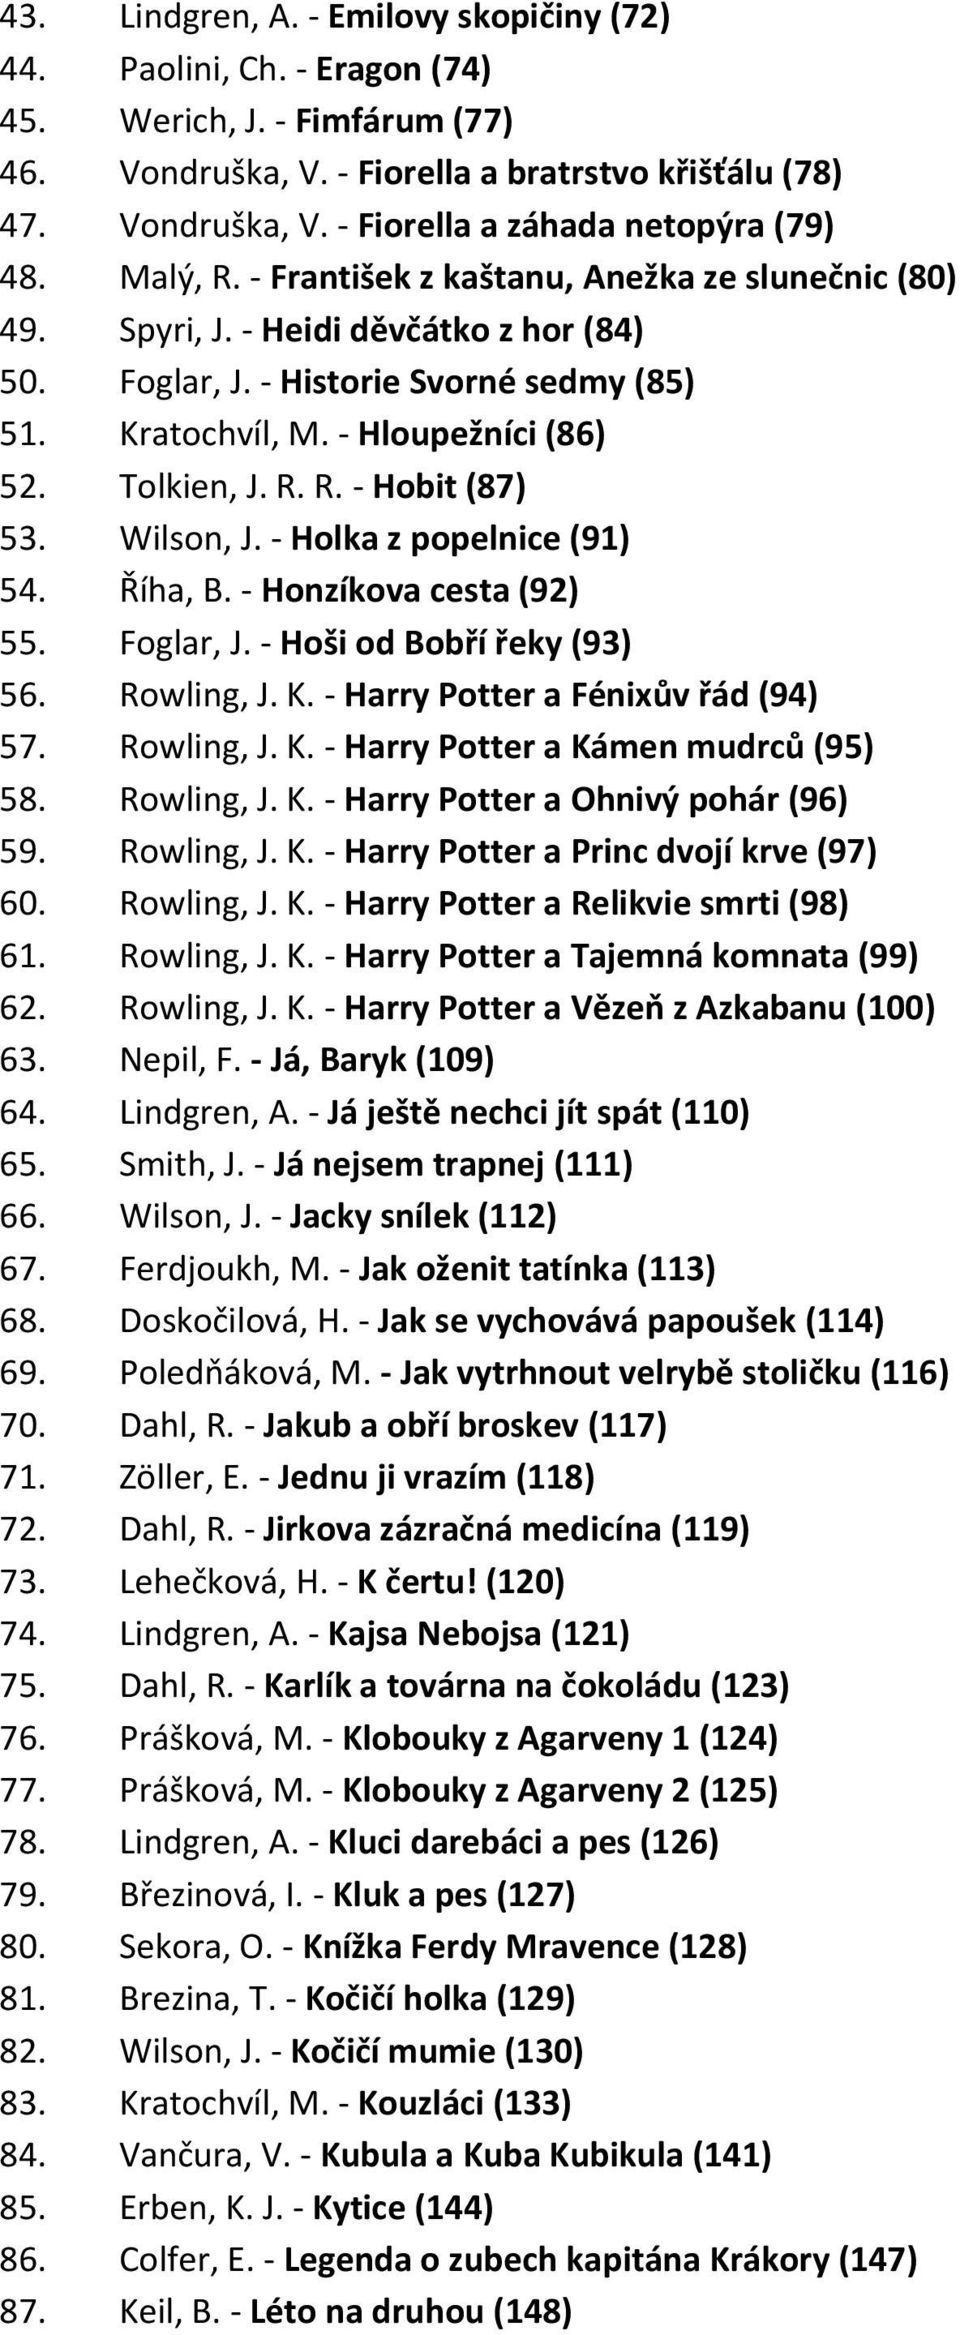 Wilson, J. - Holka z popelnice (91) 54. Říha, B. - Honzíkova cesta (92) 55. Foglar, J. - Hoši od Bobří řeky (93) 56. Rowling, J. K. - Harry Potter a Fénixův řád (94) 57. Rowling, J. K. - Harry Potter a Kámen mudrců (95) 58.